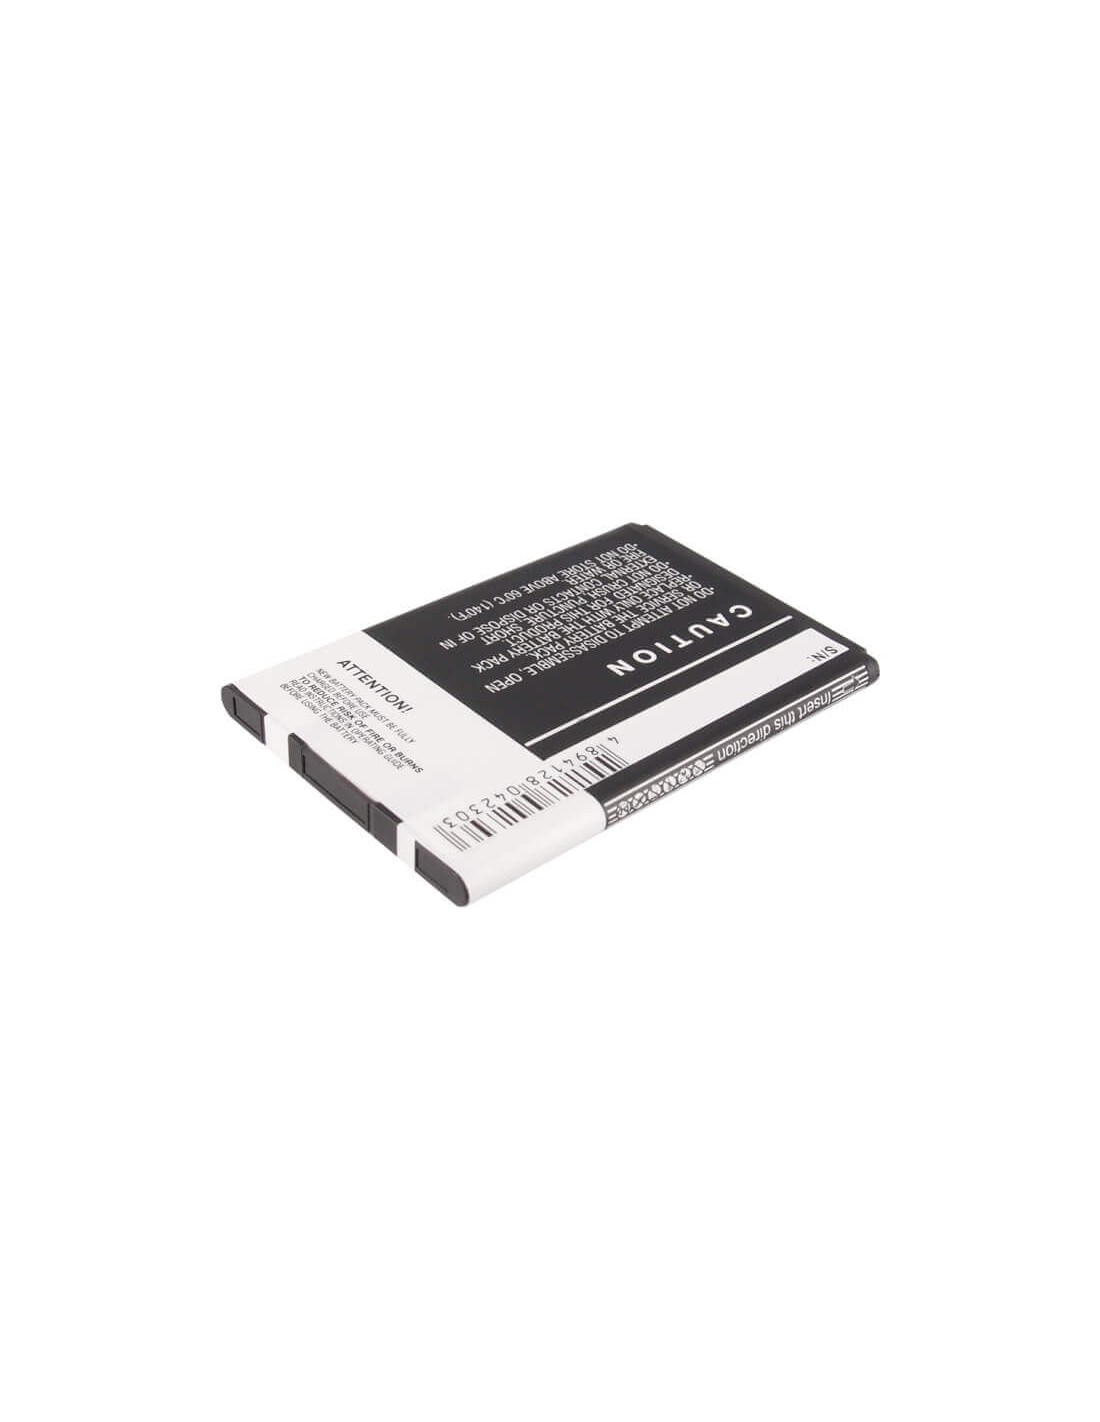 Battery for LG P970, Optimus Black, VS700 3.7V, 1500mAh - 5.55Wh